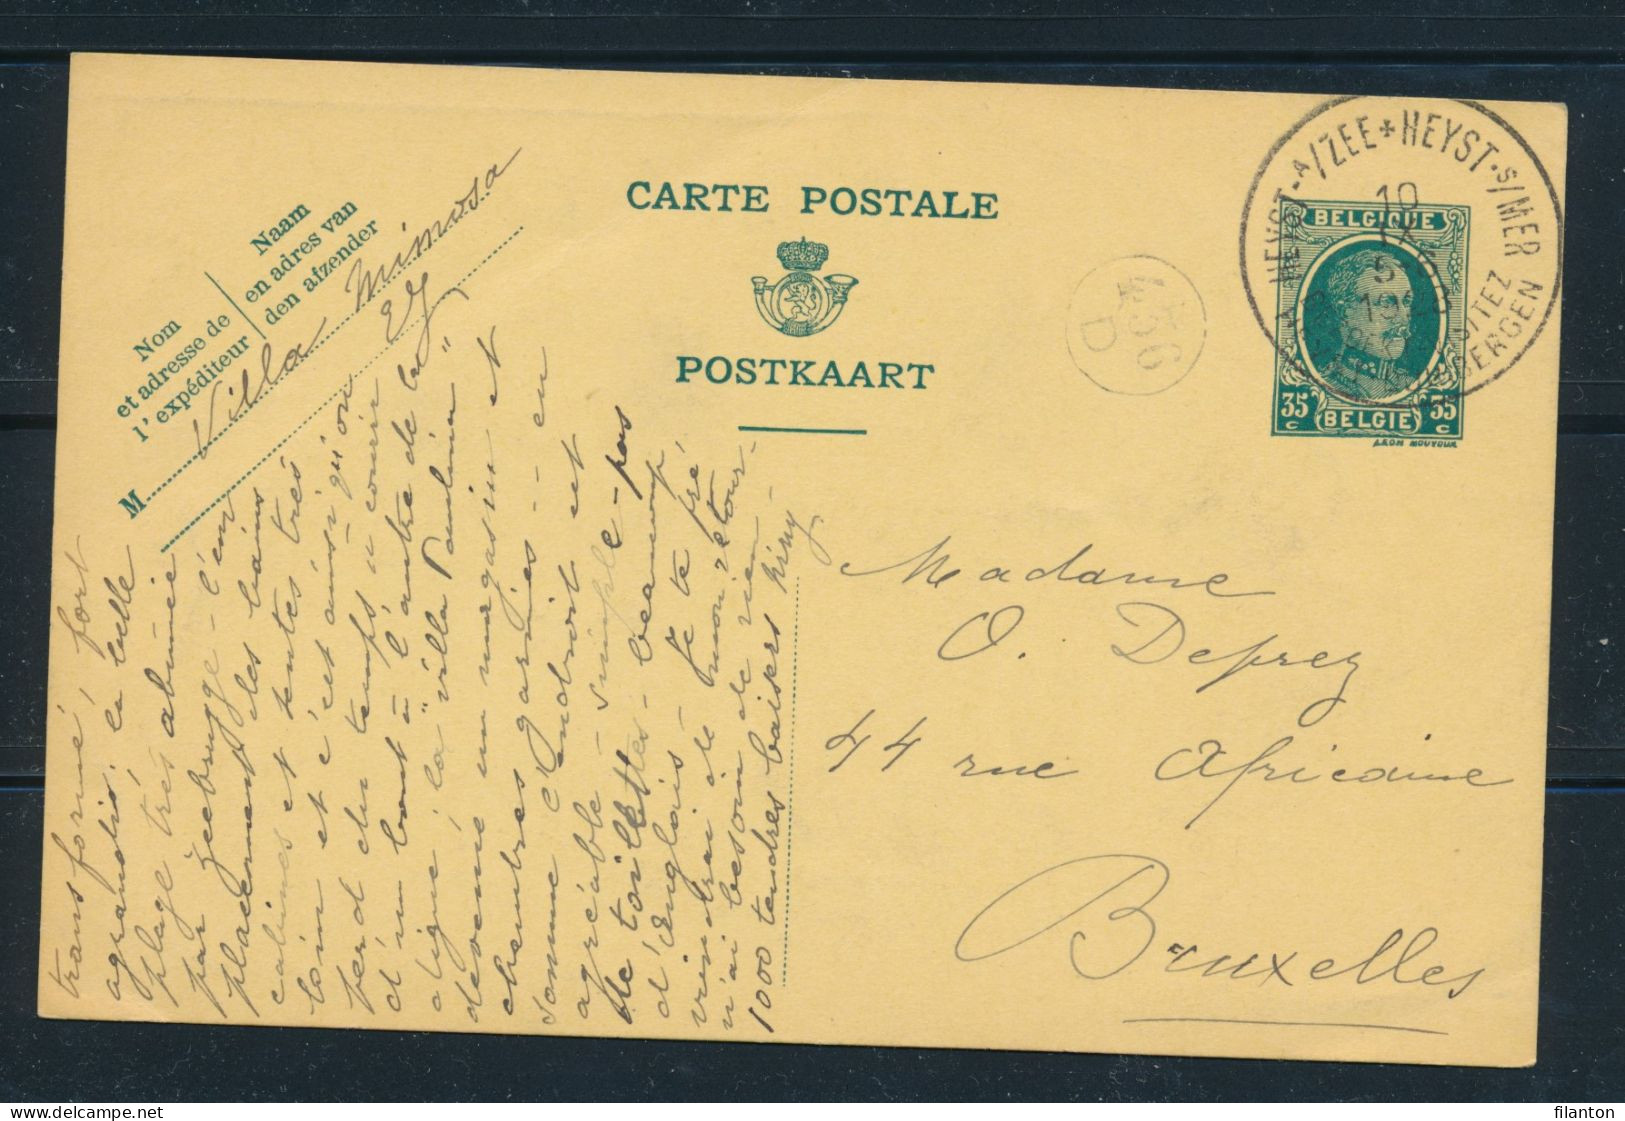 PWS - Cachet "HEYST-A/ZEE - HEYST-S/MER - BEZOEK-VISITEZ HEYST-DUINBERGEN" Dd. 10-09-1928 + Facteurstempel - (ref.1749) - Postkarten 1909-1934